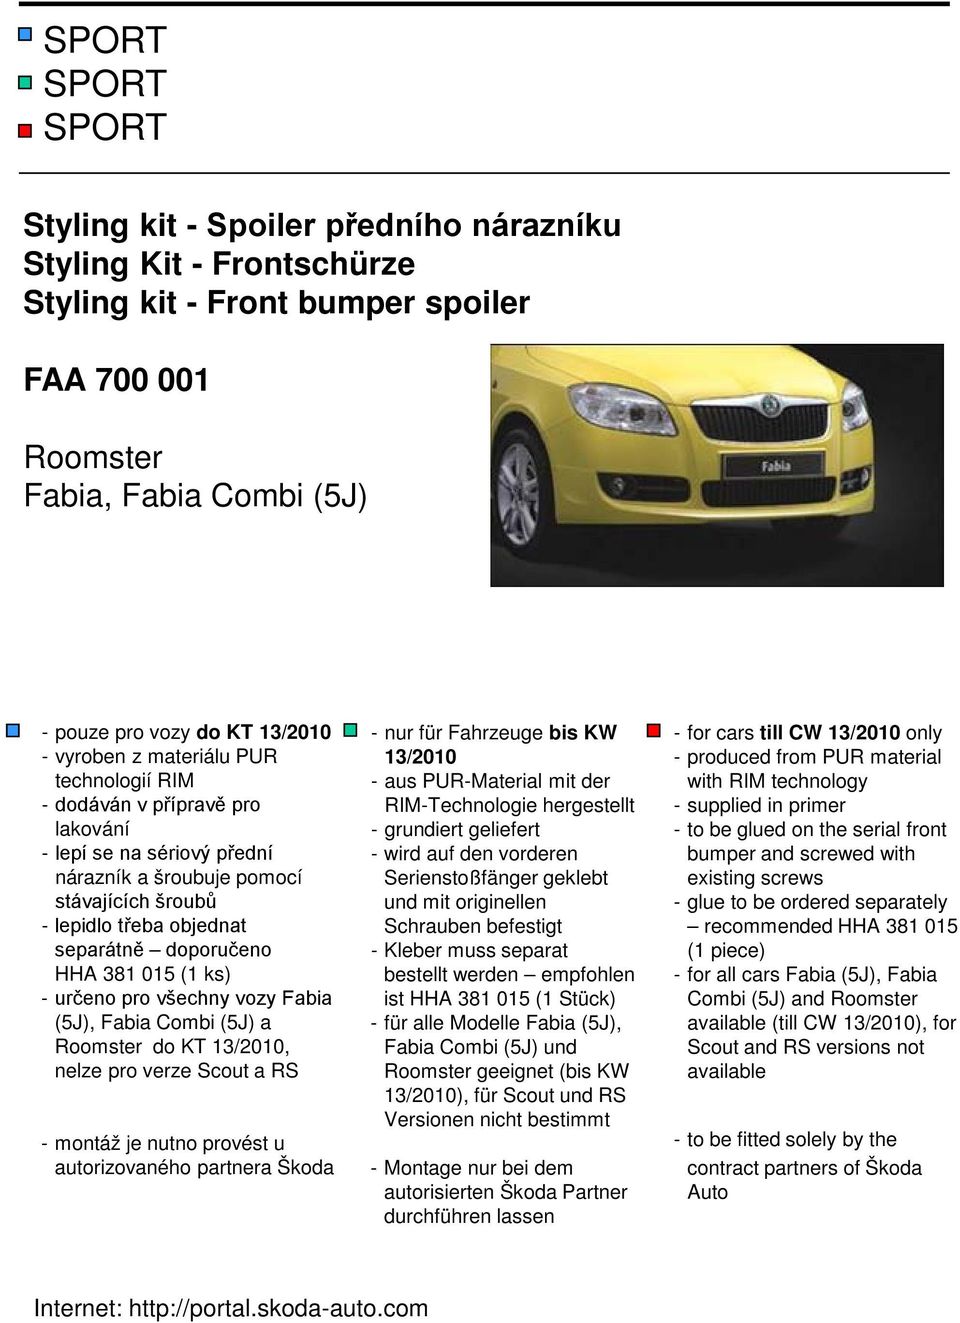 ks) - určeno pro všechny vozy Fabia (5J), Fabia Combi (5J) a Roomster do KT 13/2010, nelze pro verze Scout a RS - montáž je nutno provést u autorizovaného partnera Škoda - nur für Fahrzeuge bis KW